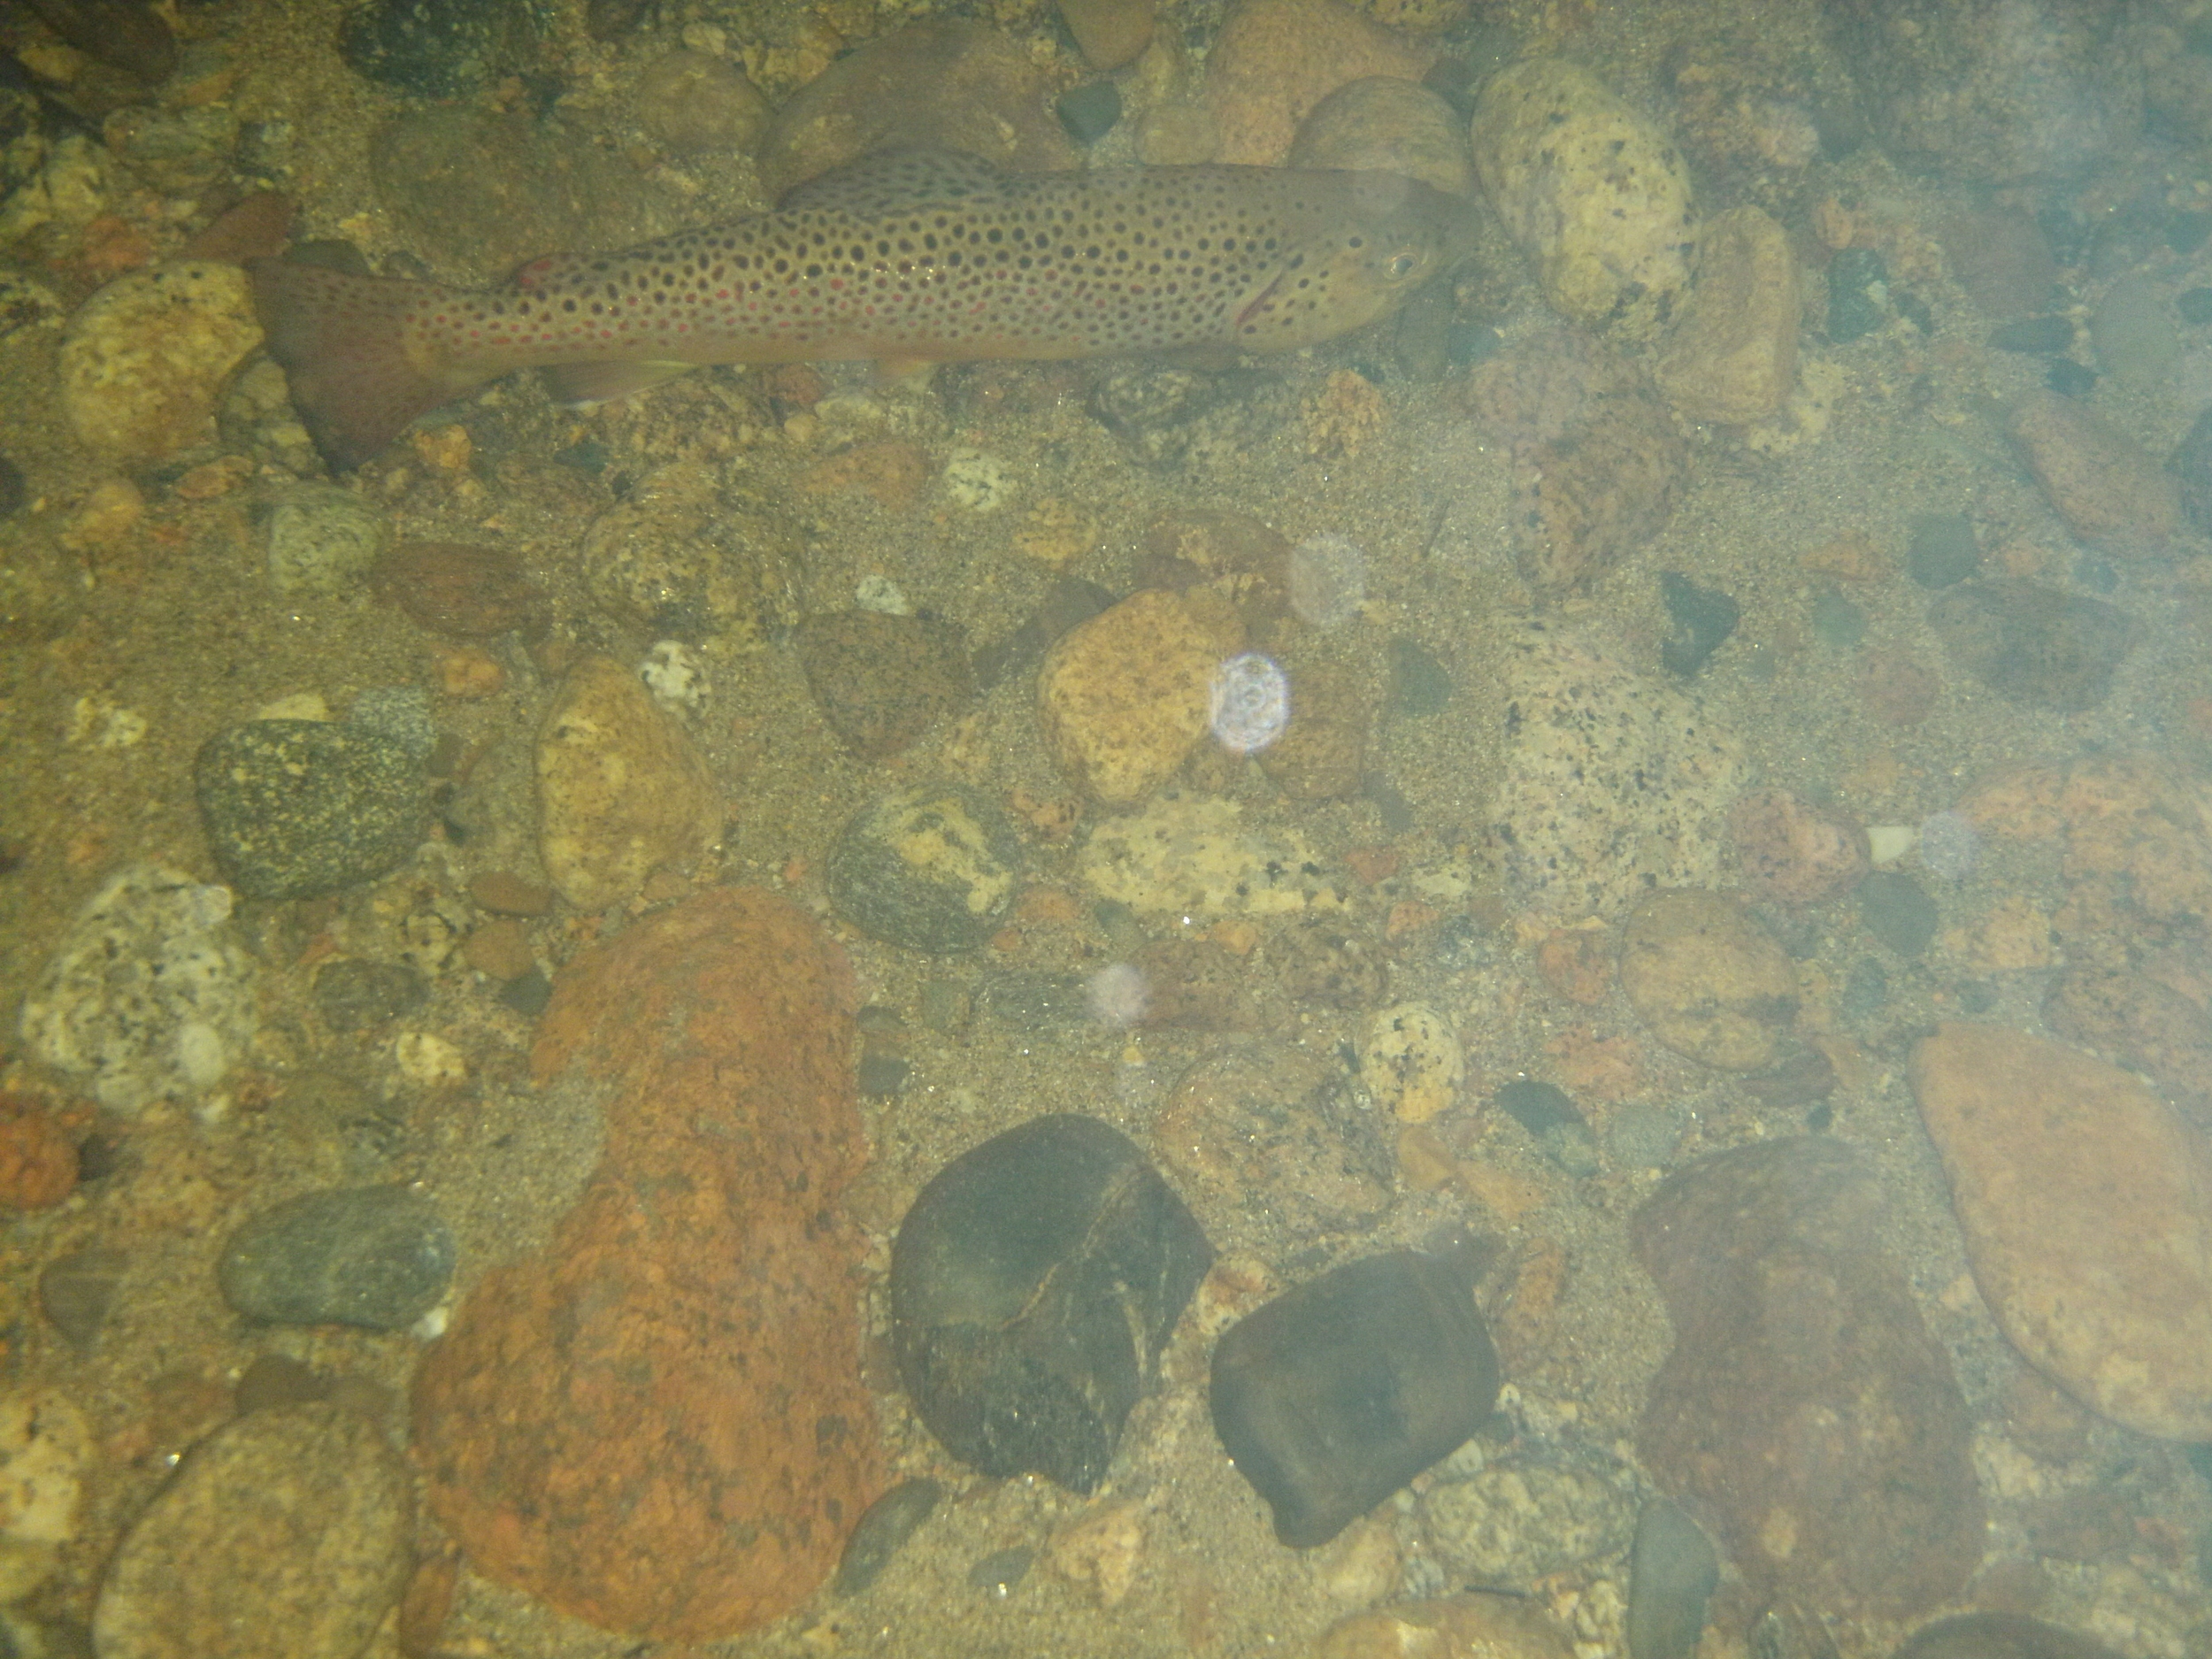 brown trout in water.JPG